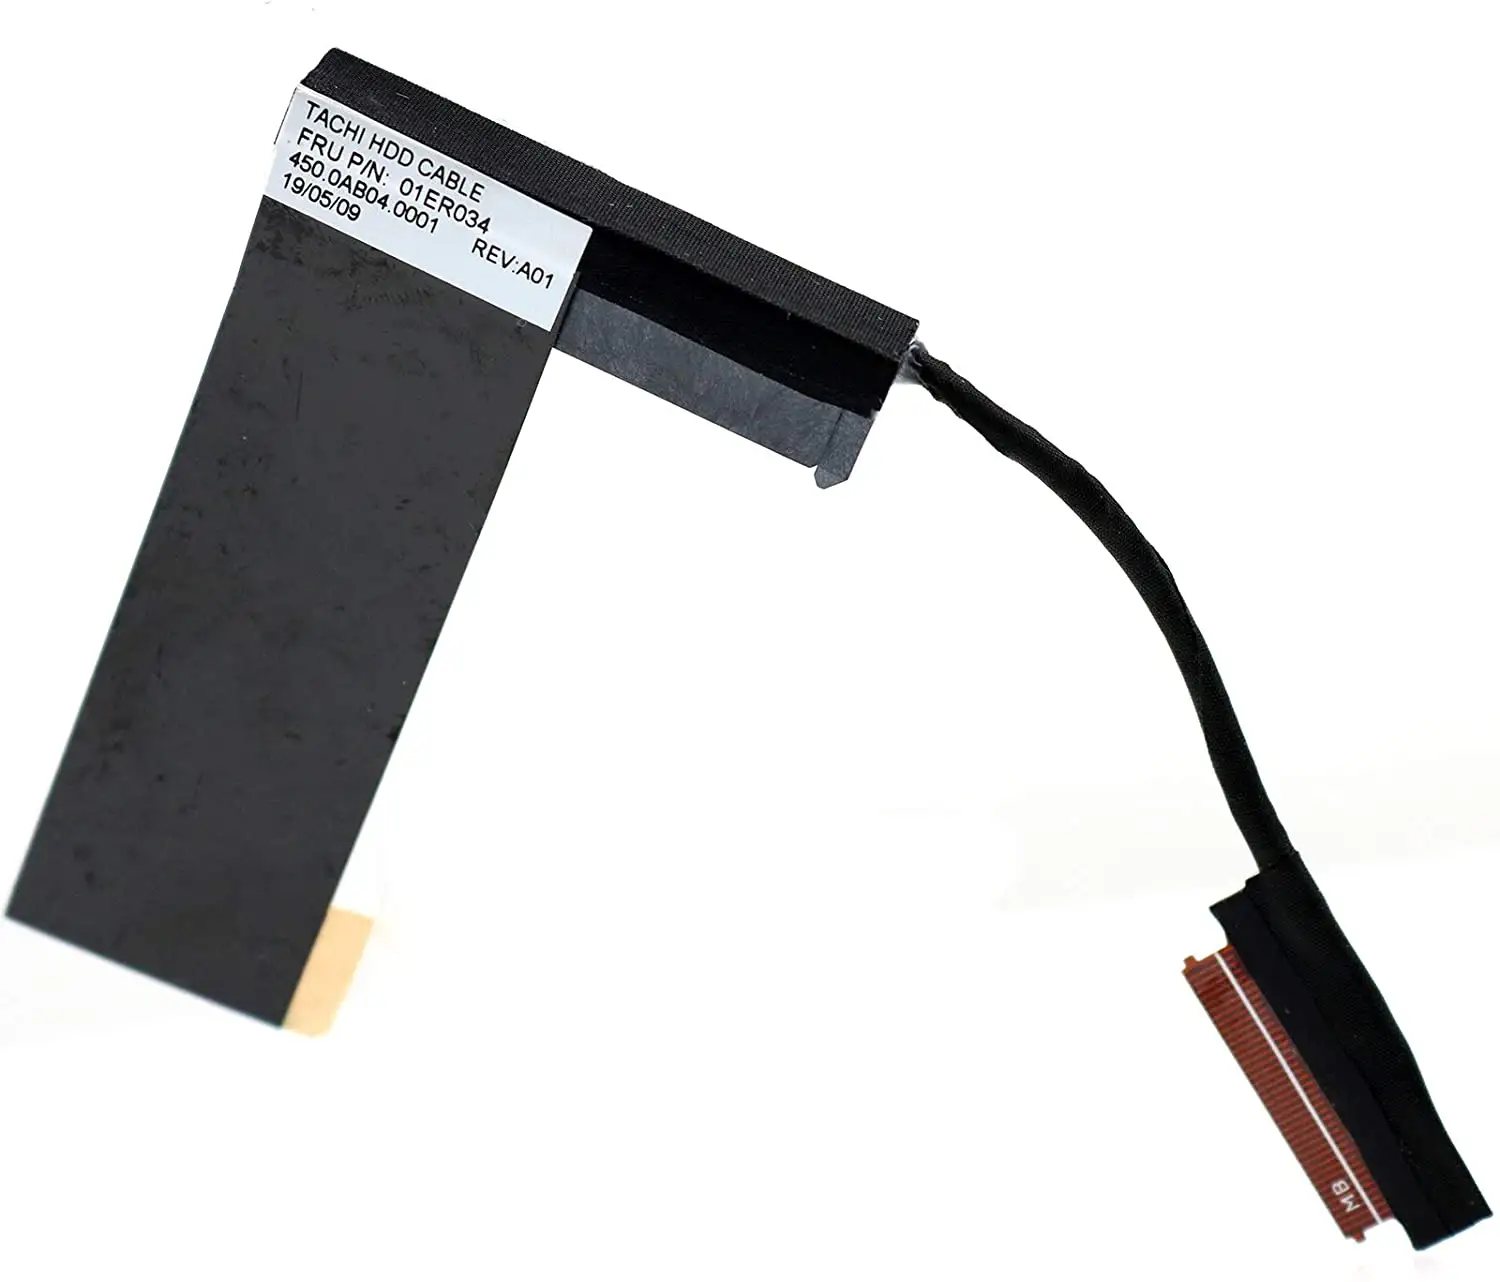 SSD SATA 2.5 "Disque Dur Câble Connecteur HDD Caddy Support pour Lenovo ThinkPad T570 T580 P51S P52s Câble de DISQUE DUR 450.0AB040001 01E